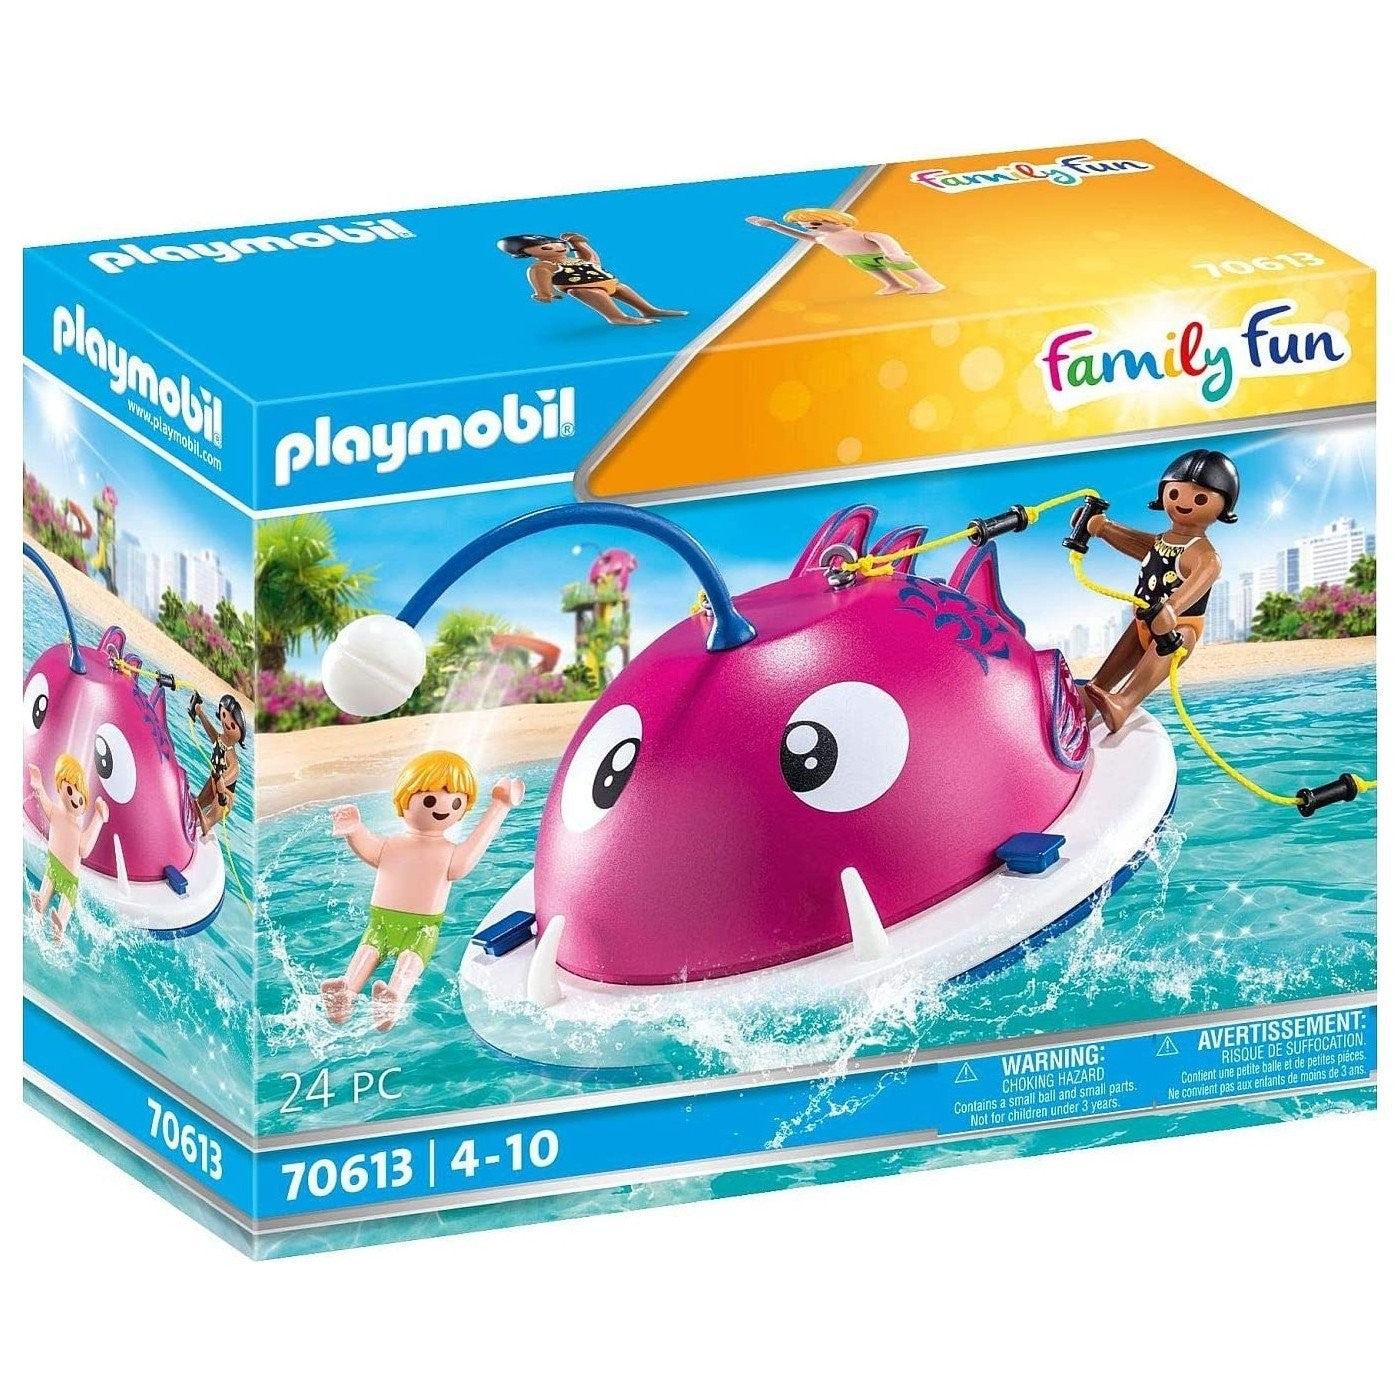 Pływająca wyspa Family Fun - zabawa w wodzie z Playmobil